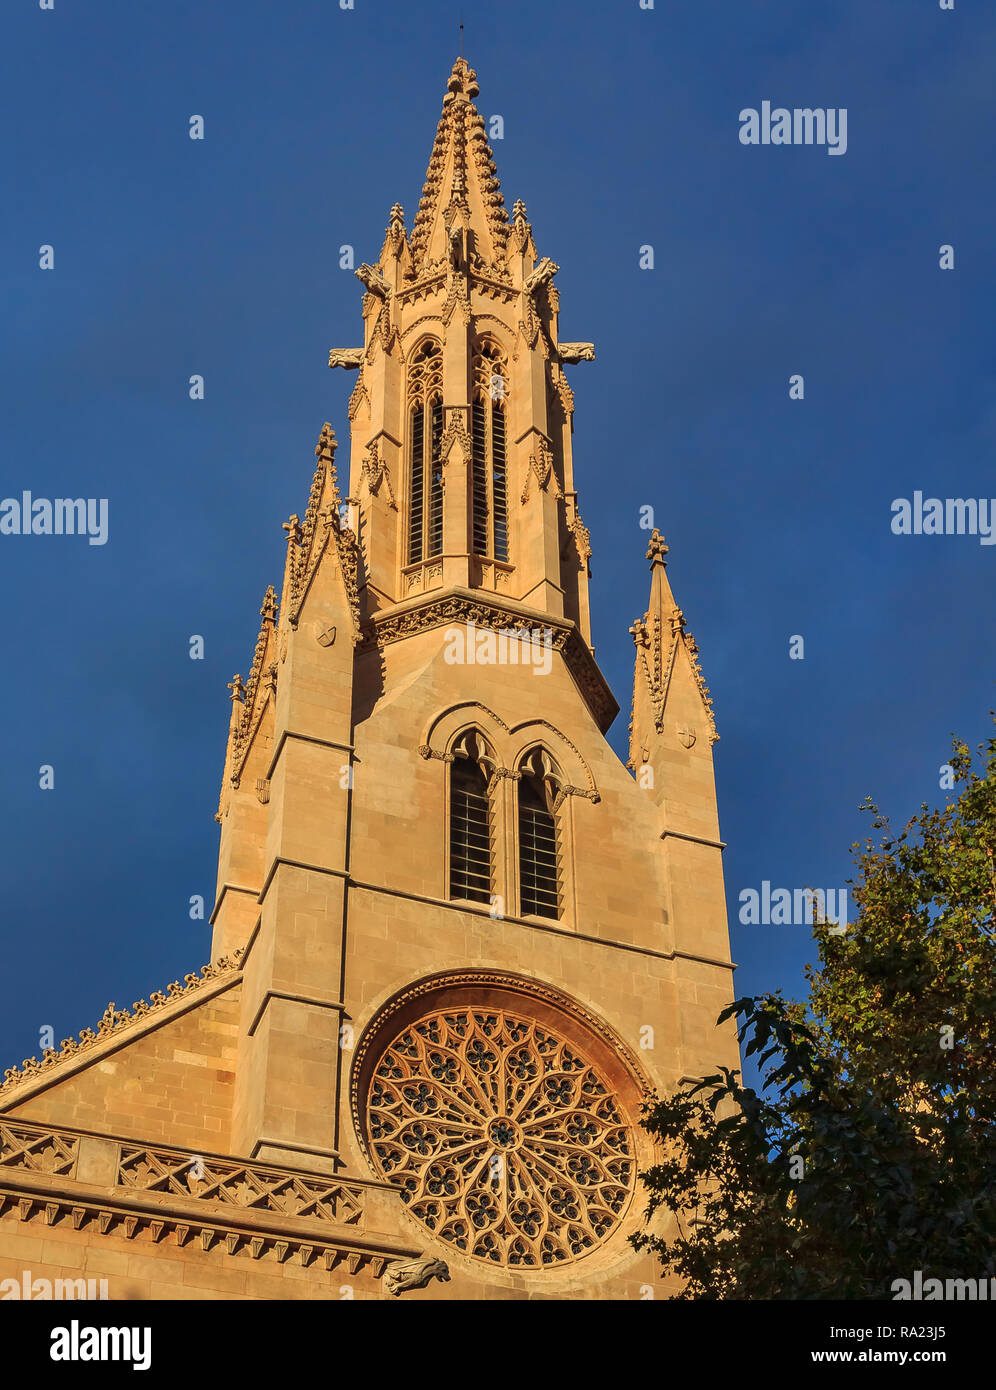 Ornato rosone gotico della chiesa Parroquia de Santa Eulalia, una delle quattro chiese più antiche in Palma de Mallorca a Maiorca isole Baleari Foto Stock